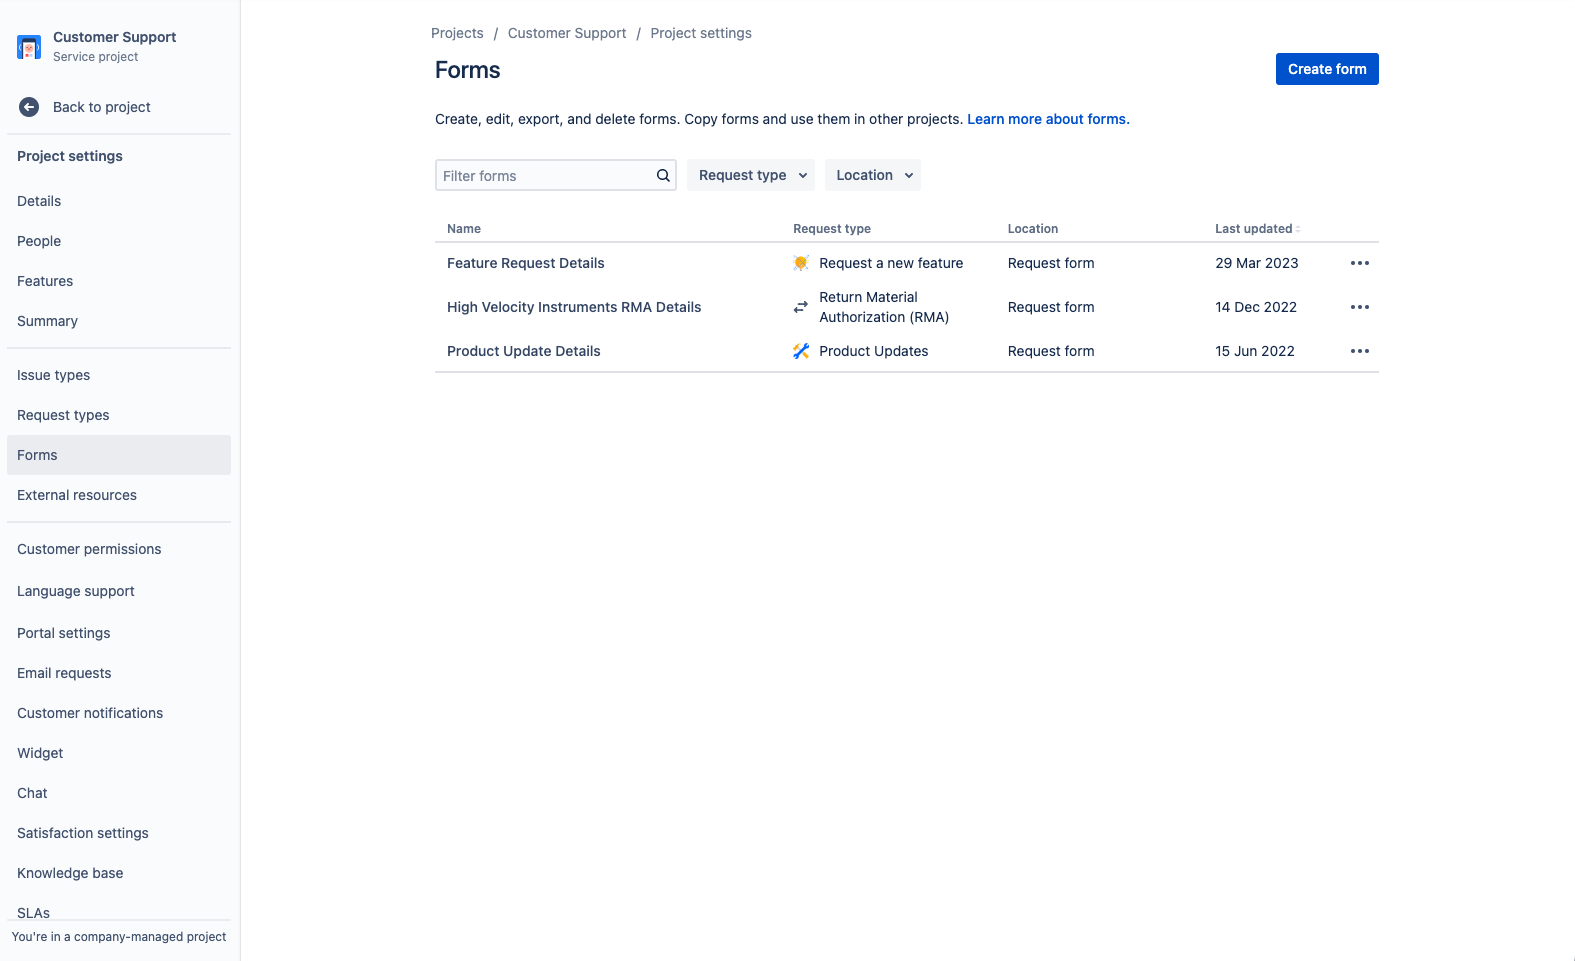 schermafbeelding van een formulier voor klantenservice